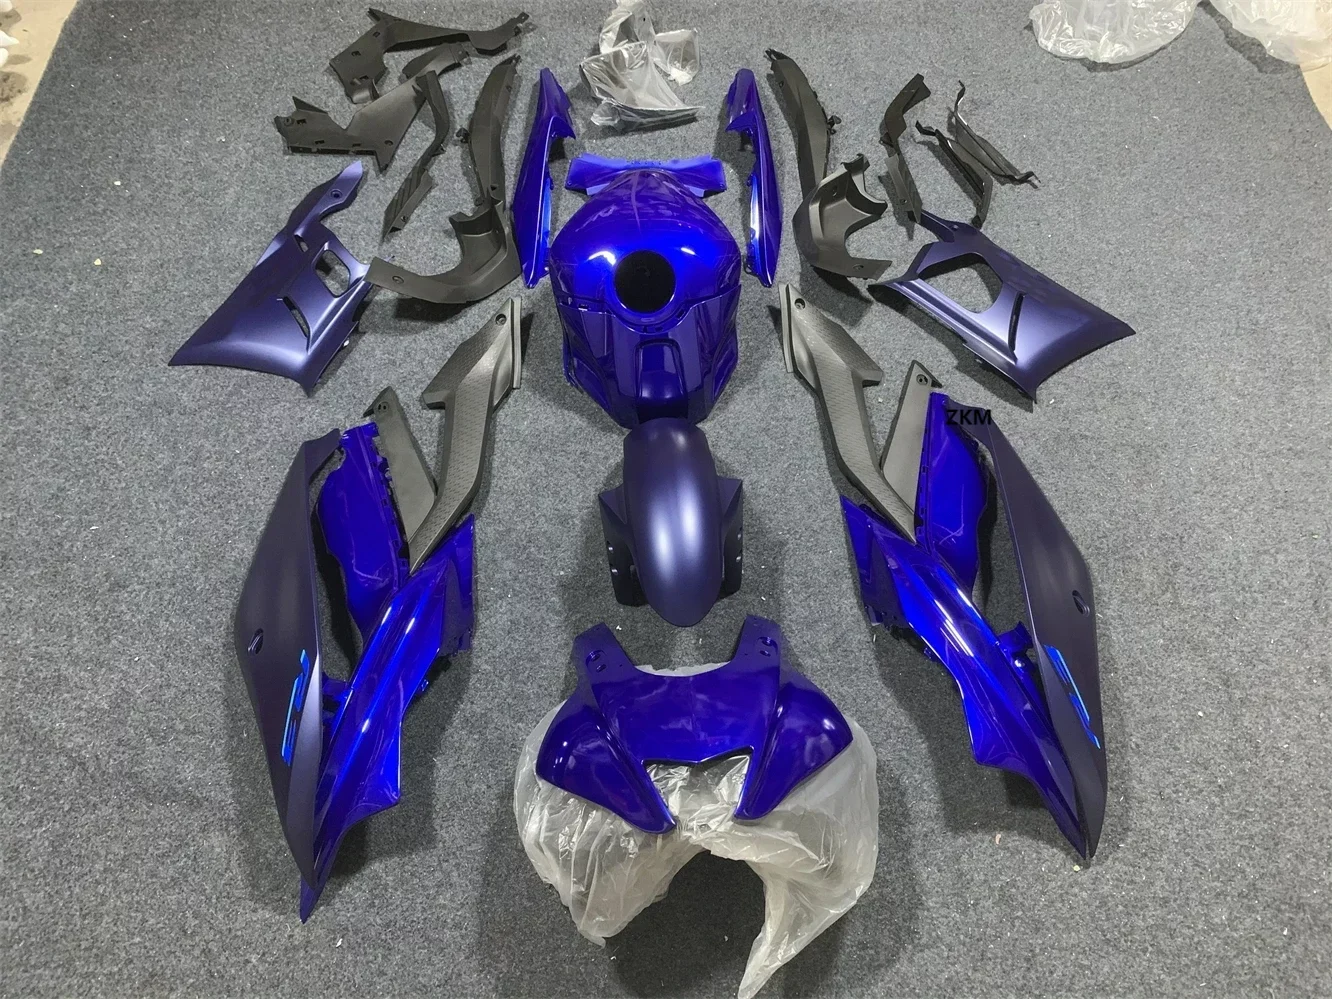 

Комплект обтекателей для мотоцикла Yamaha R3 19-23 R25 2019 2020 2021 2022 2023 обтекатель матовый фиолетовый